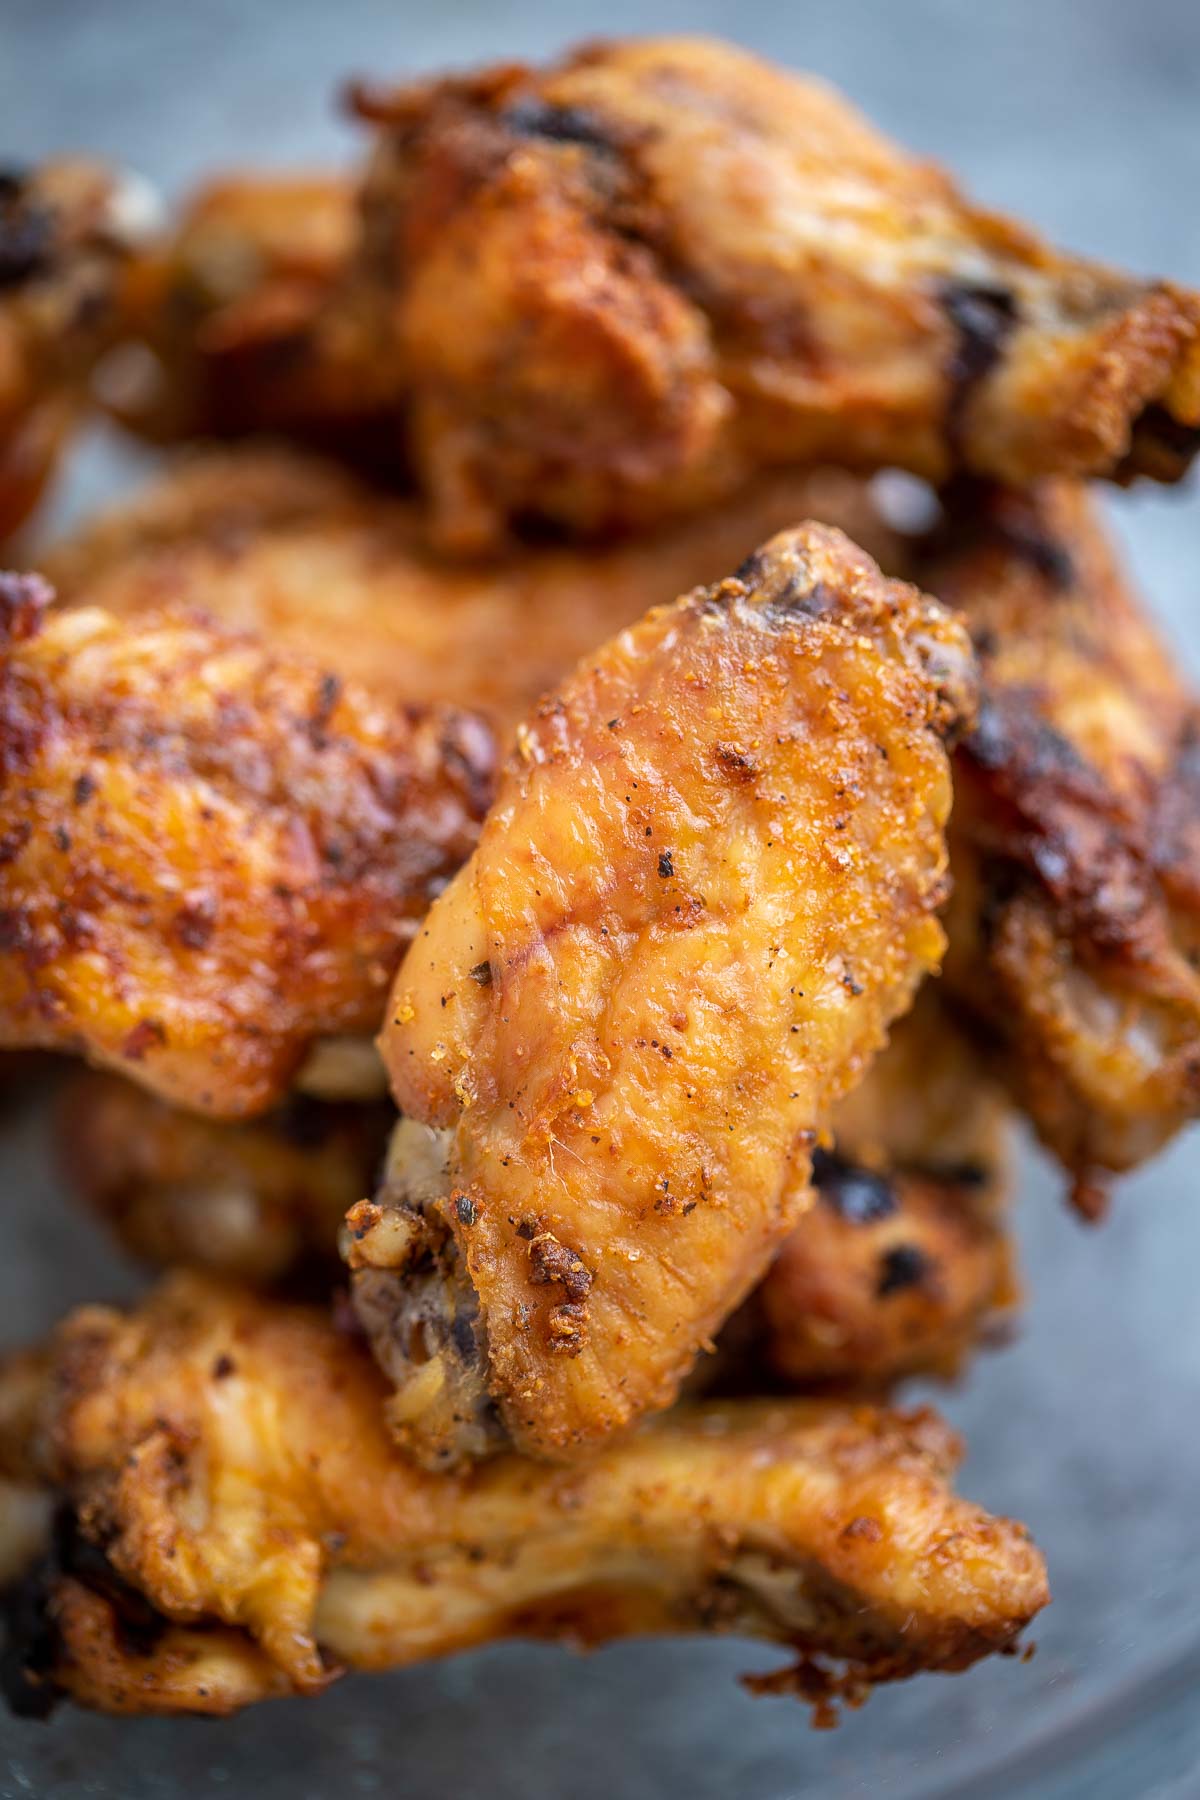 Crispy Baked Chicken Wings Recipe - Let the Baking Begin!